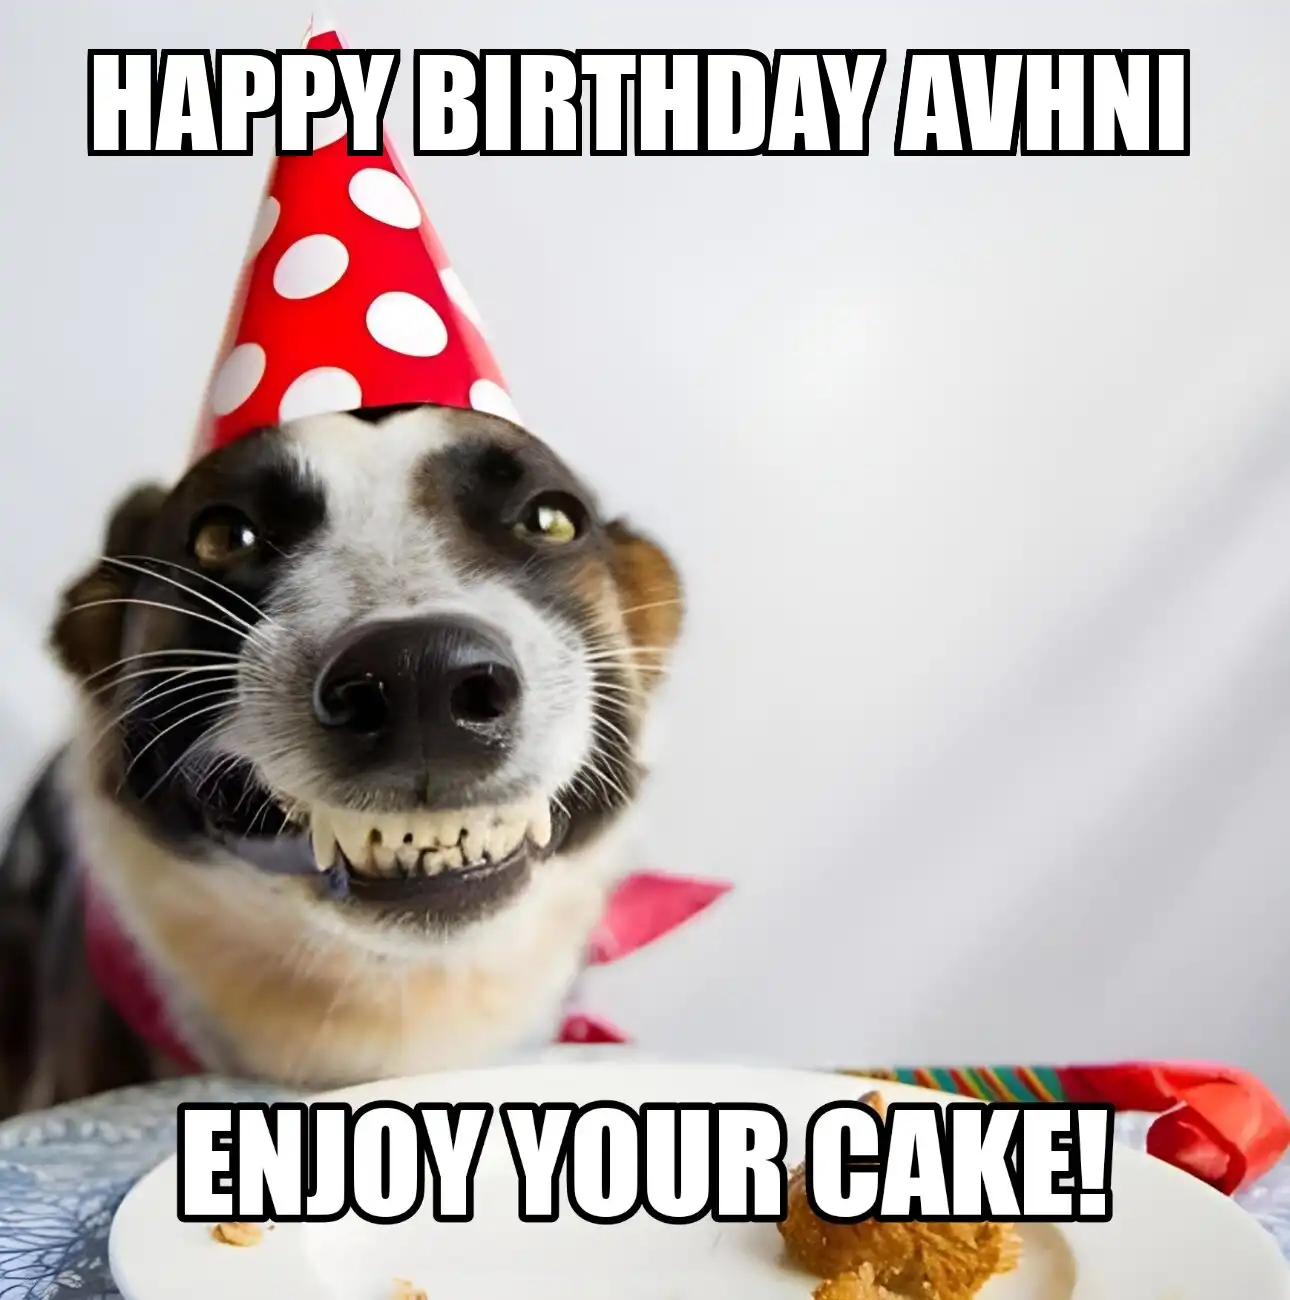 Happy Birthday Avhni Enjoy Your Cake Dog Meme